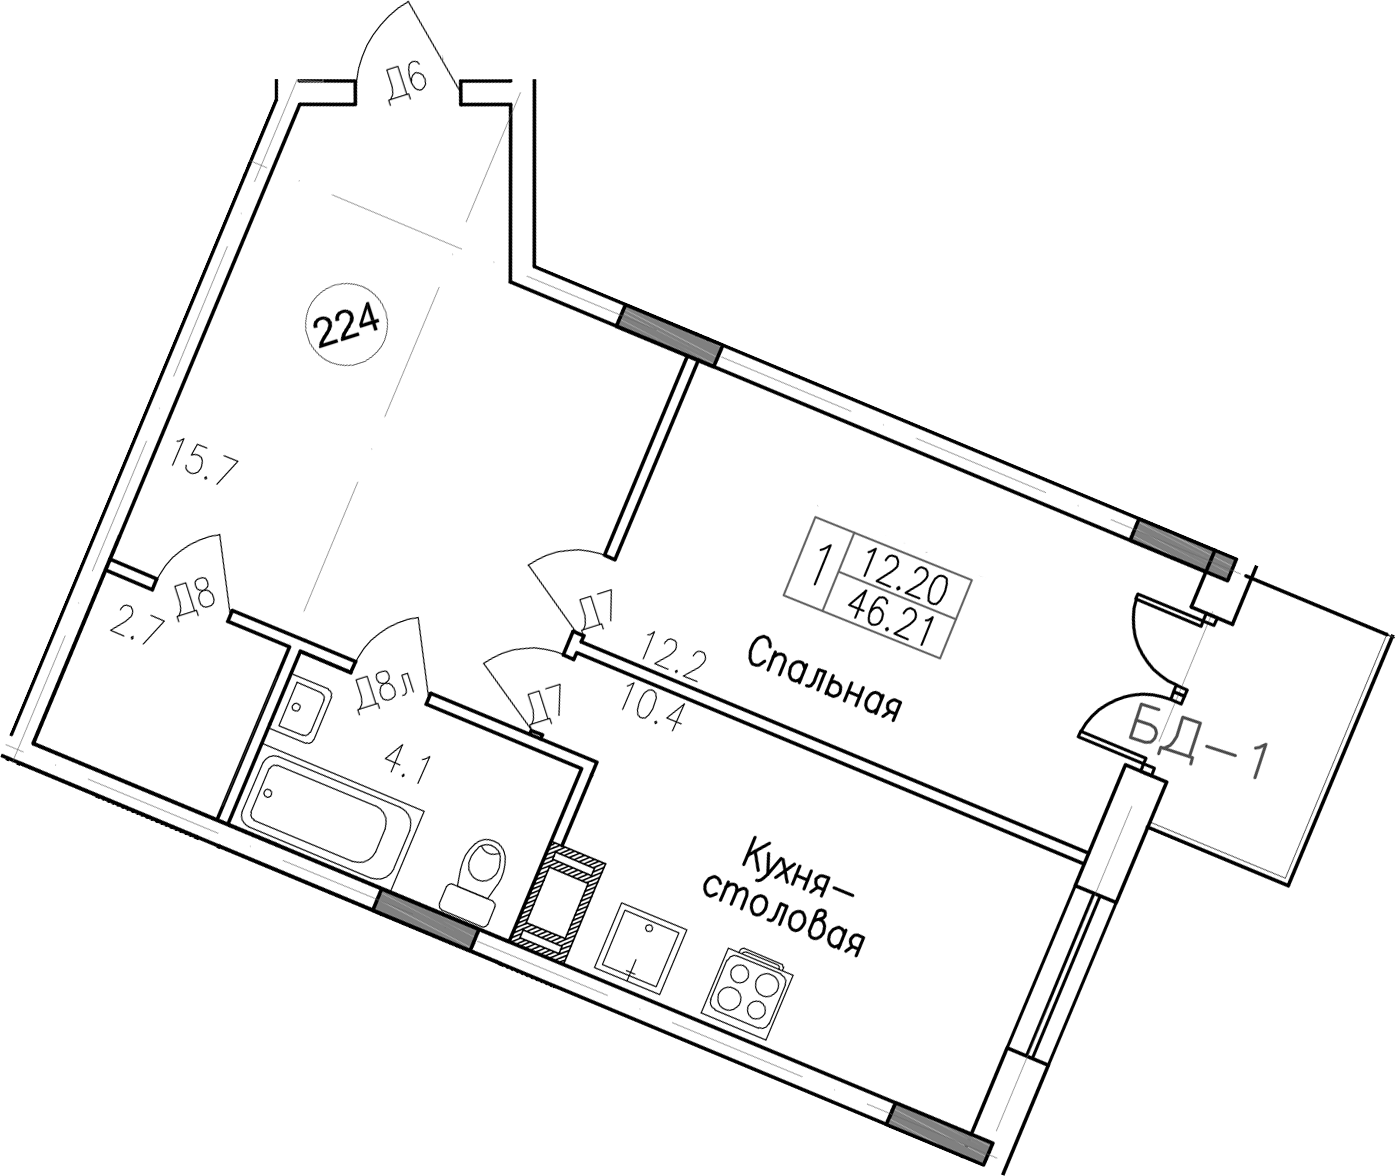 1-комнатная, 46.21 м²– 2